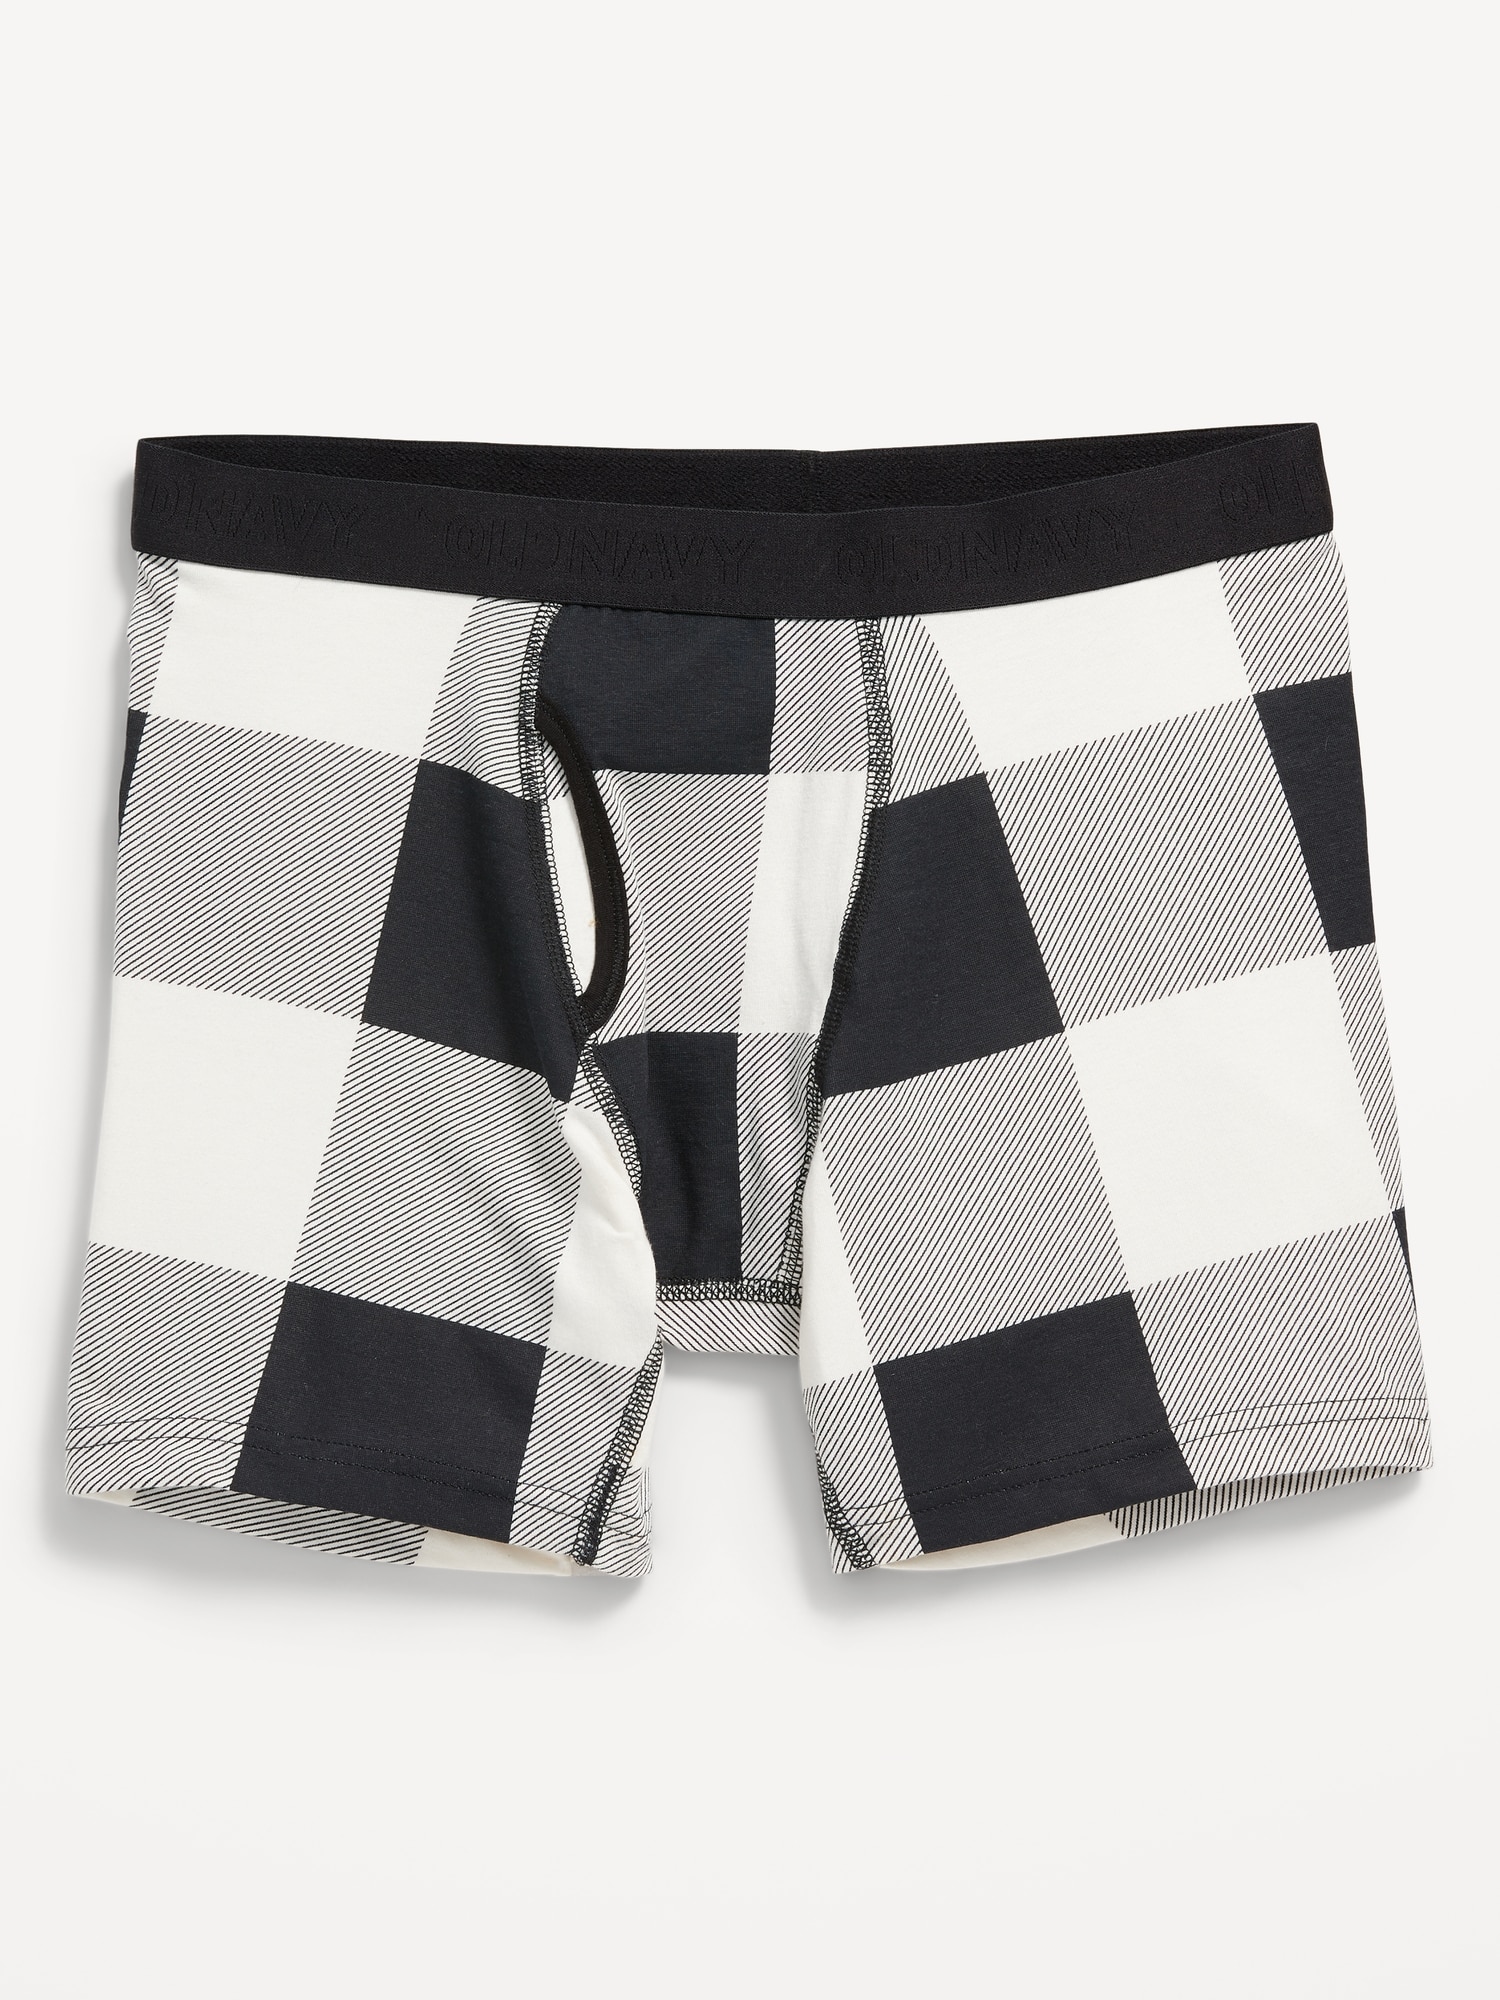 Soft-Washed Built-In Flex Boxer-Brief Underwear 10-Pack for Men --6.25-inch  inseam